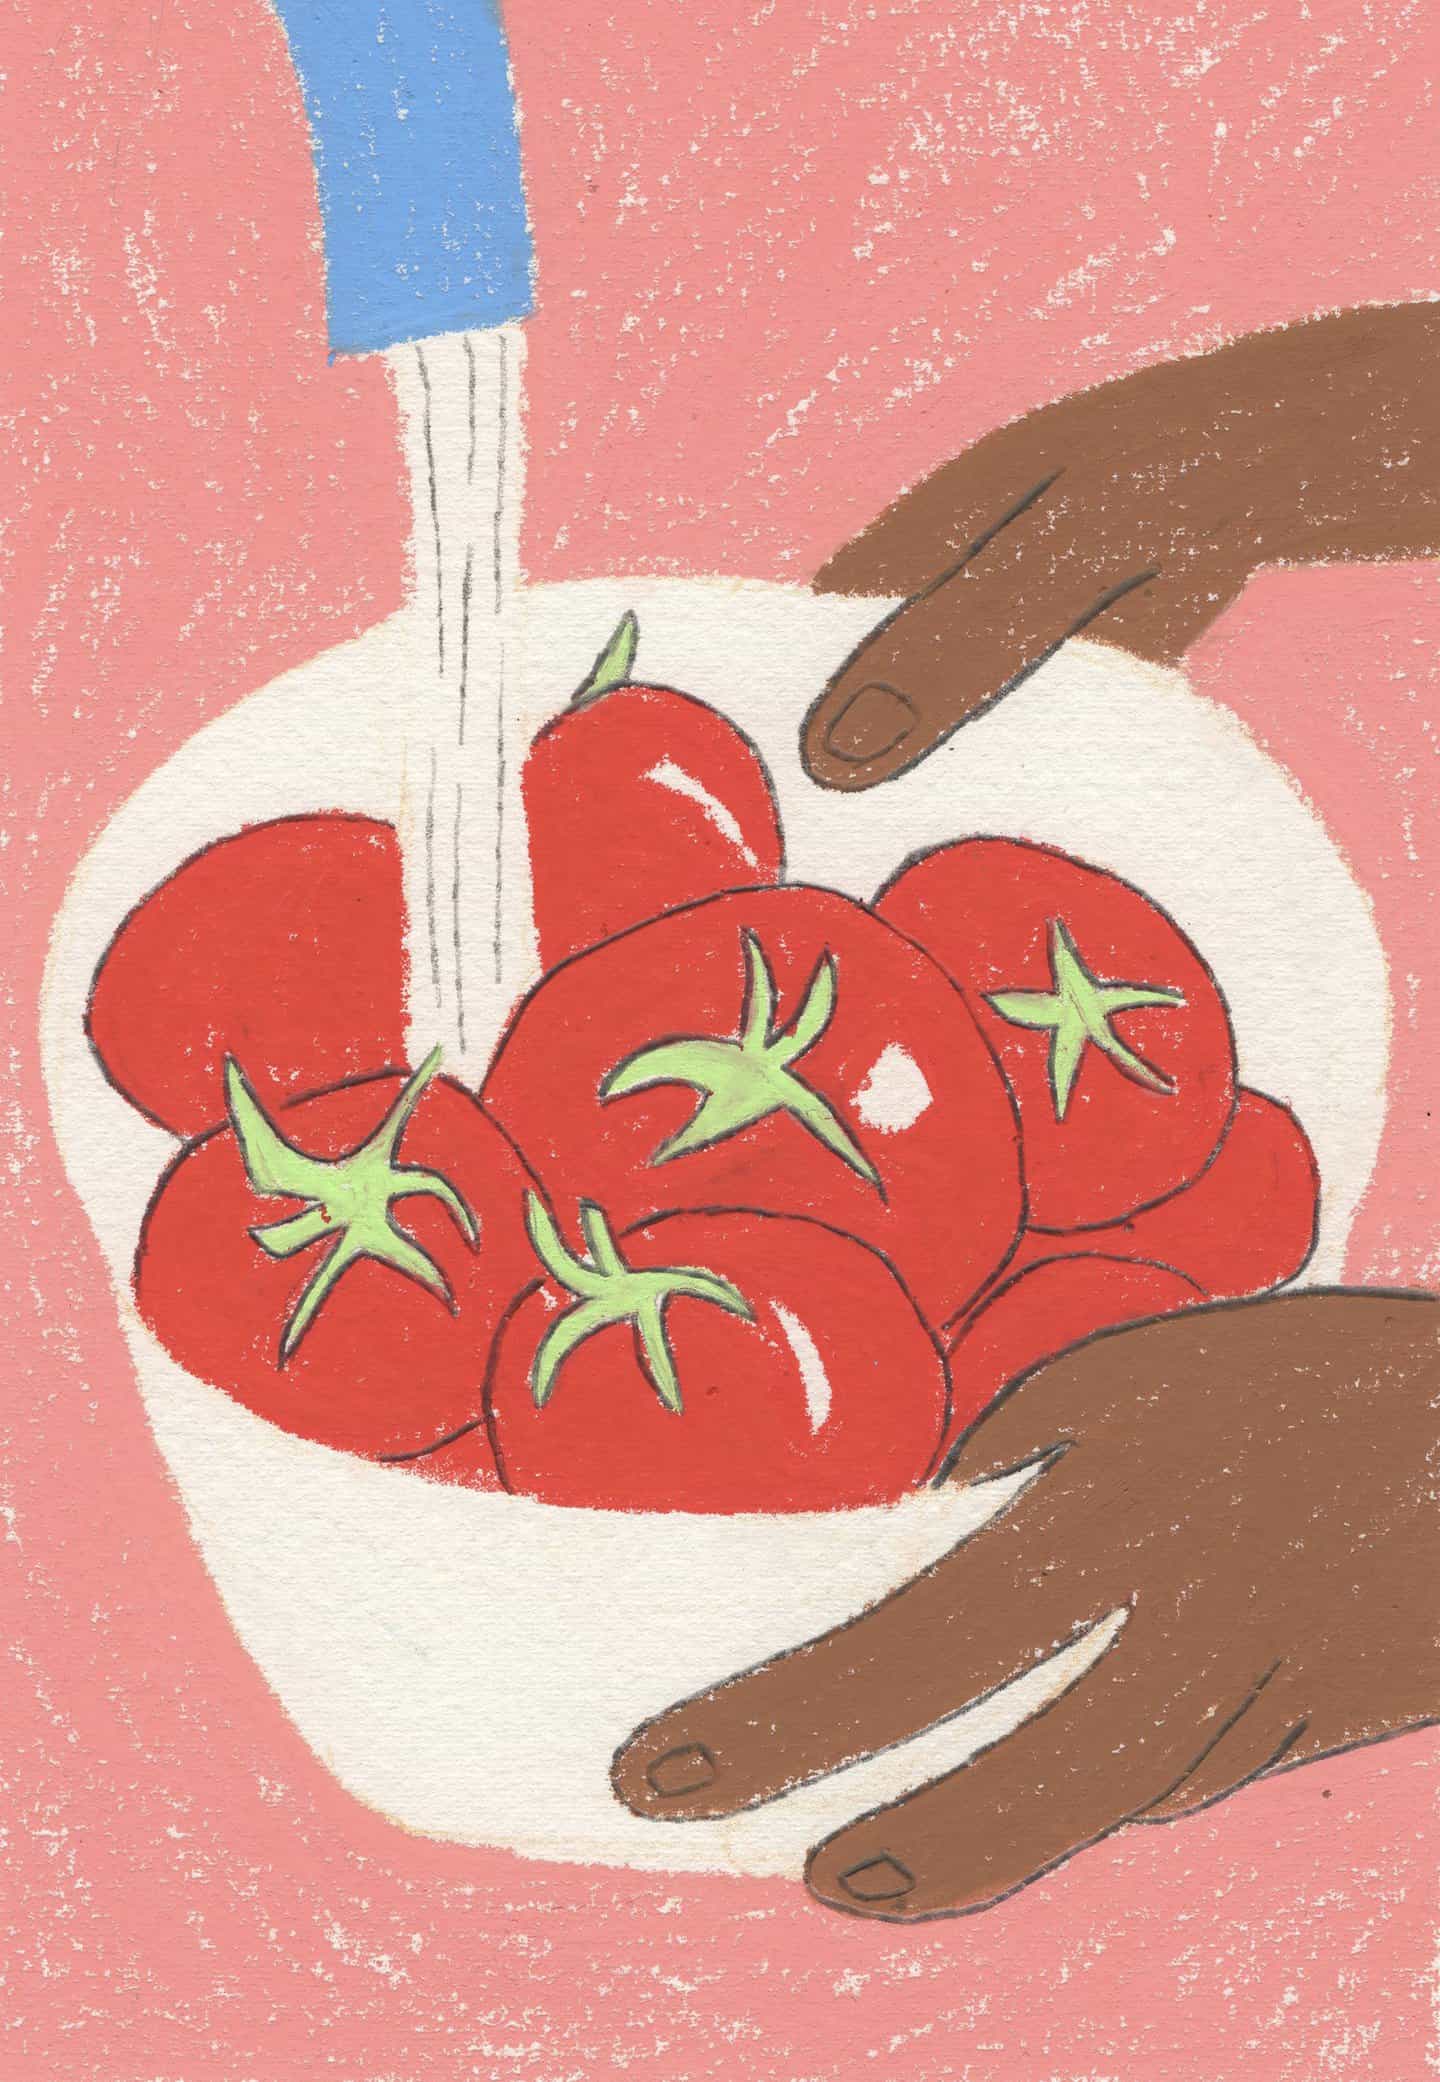 Cortar, doblar, comer: las ilustraciones de Mon Jajaja muestran la alegría que la comida trae a nuestras vidas